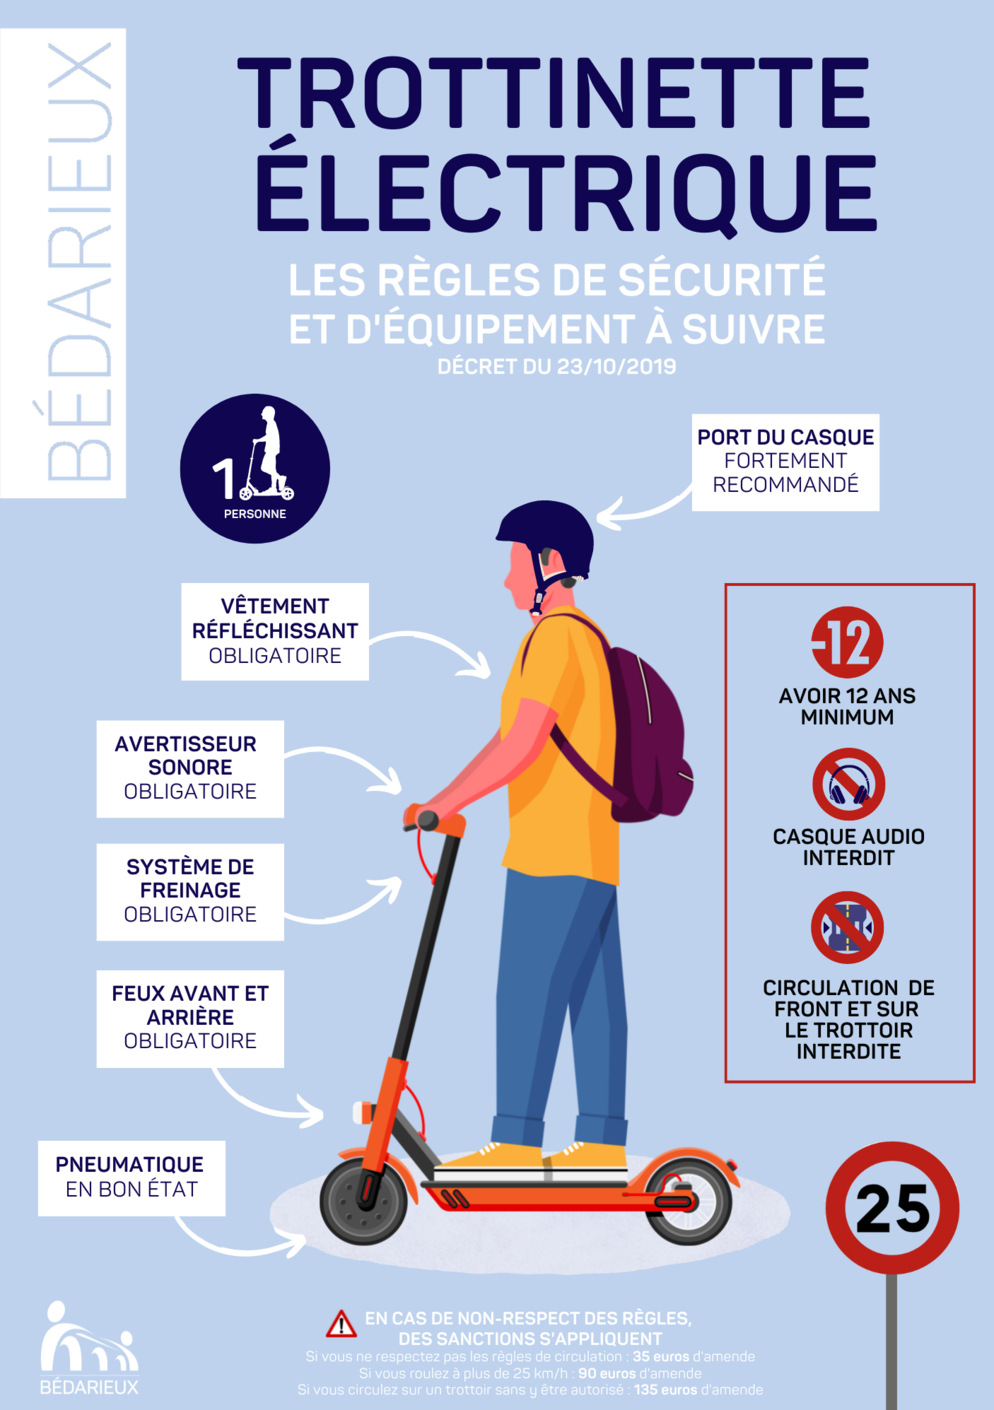 Trottinette électrique : Les nouvelles règles de circulation et de